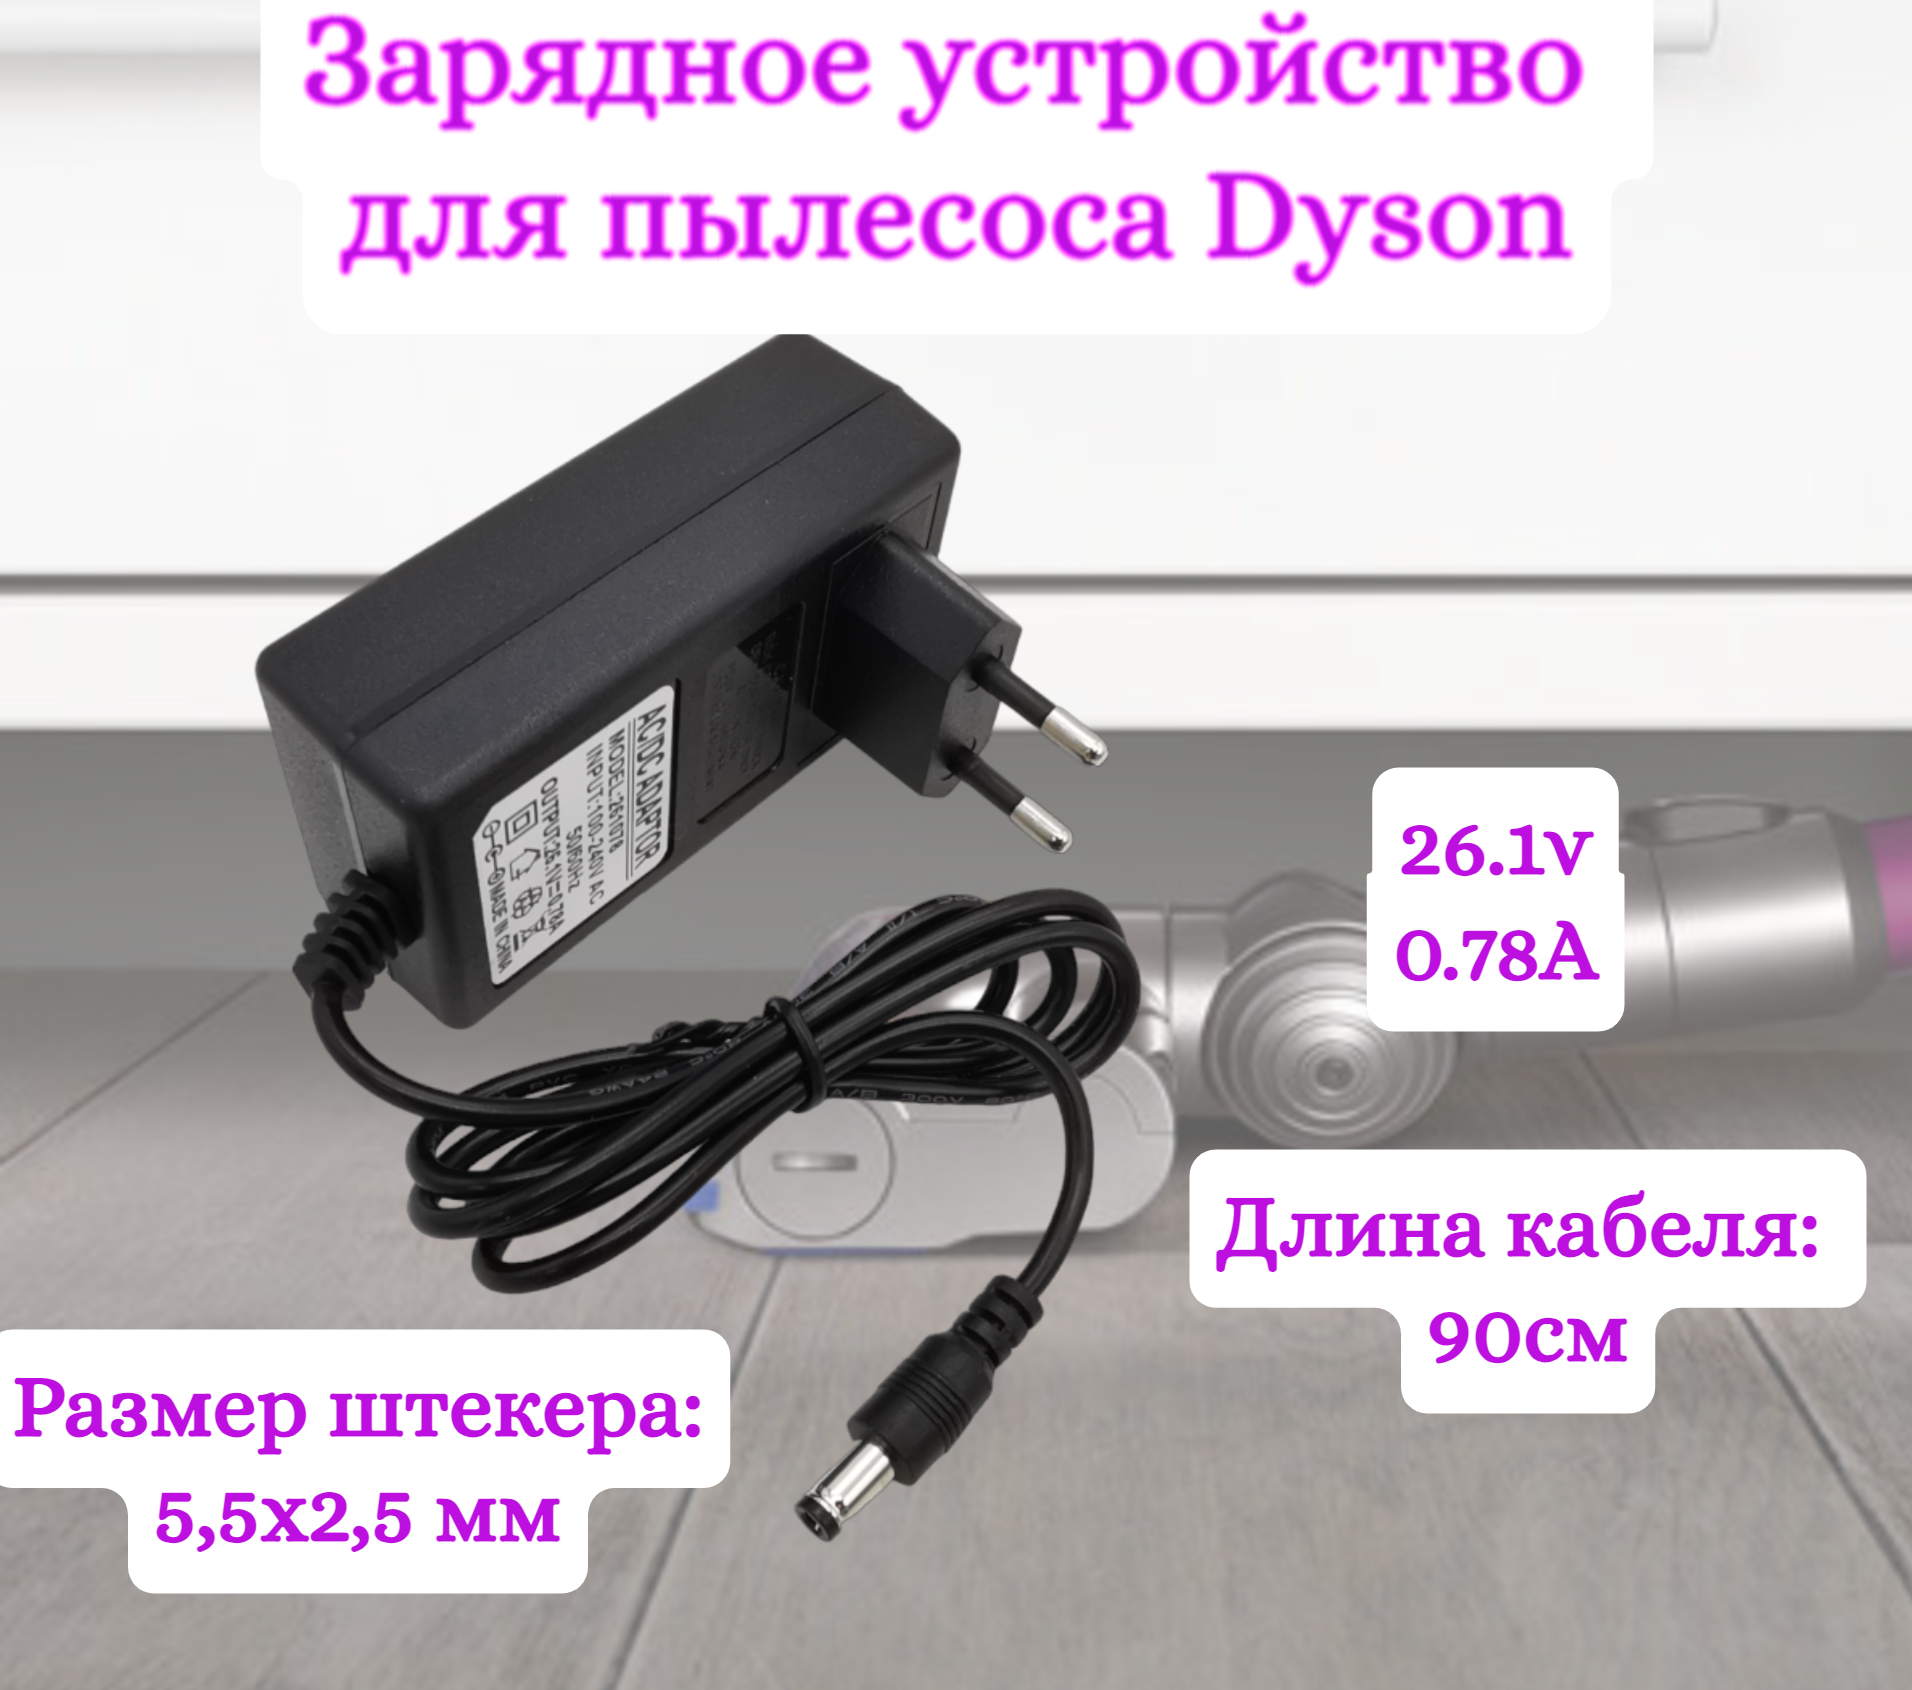 Зарядное устройство для пылесосов Helpico AC-DC 26.1v 0.78A 5.5x2.5mm зарядное устройство zd24w342060eu для пылесосов jimmy jv65 jv85 pro